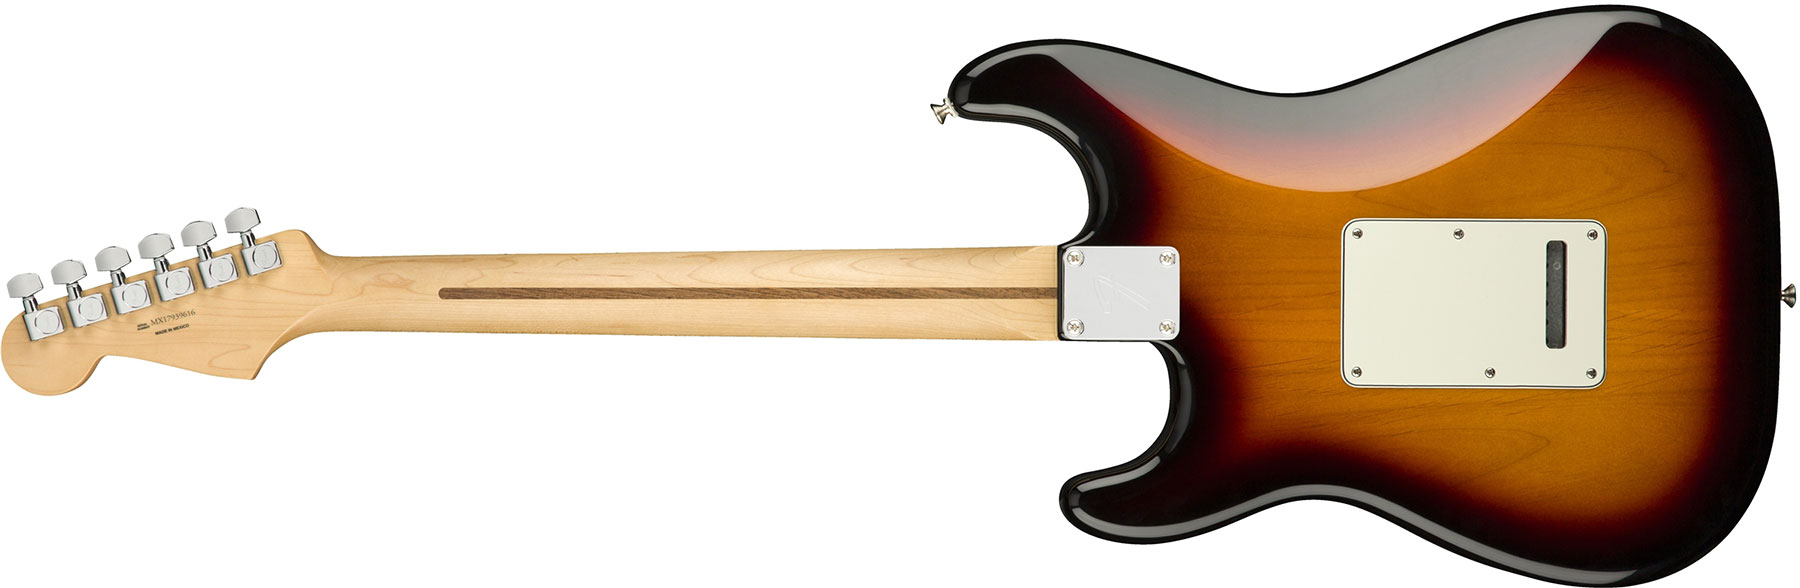 Fender Strat Player Mex Hss Mn - 3-color Sunburst - E-Gitarre in Str-Form - Variation 1